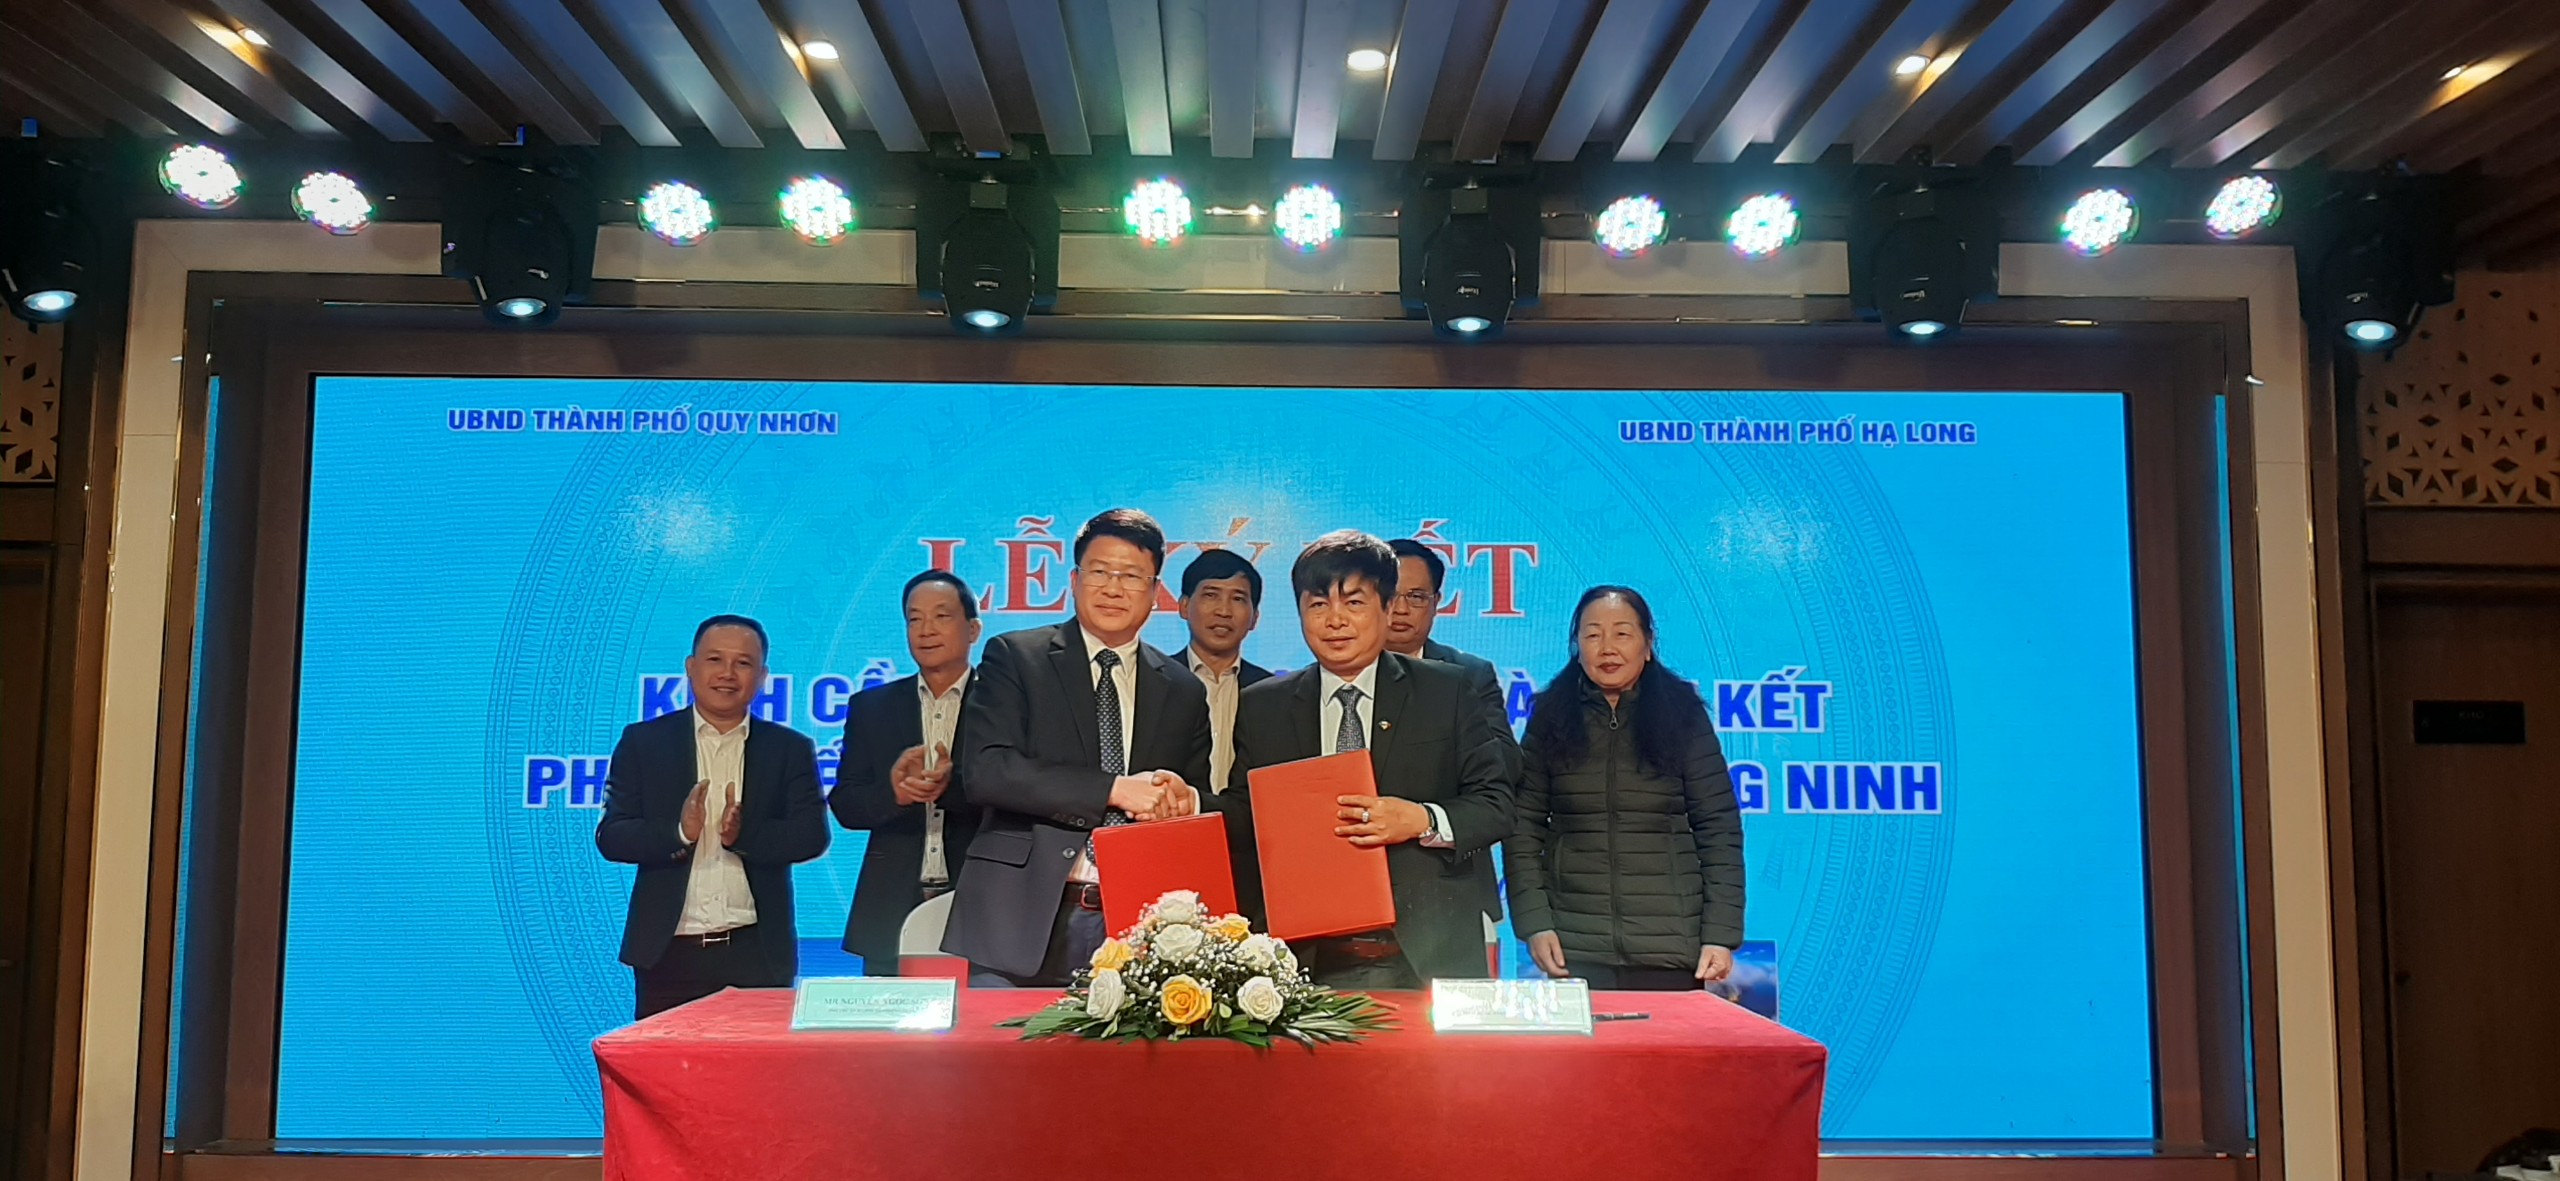 Thành phố Hạ Long, Quảng Ninh và TP Quy Nhơn, Bình Định ký kết thỏa thuận liên kết hợp tác phát triển du lịch giai đoạn 2021 – 2025